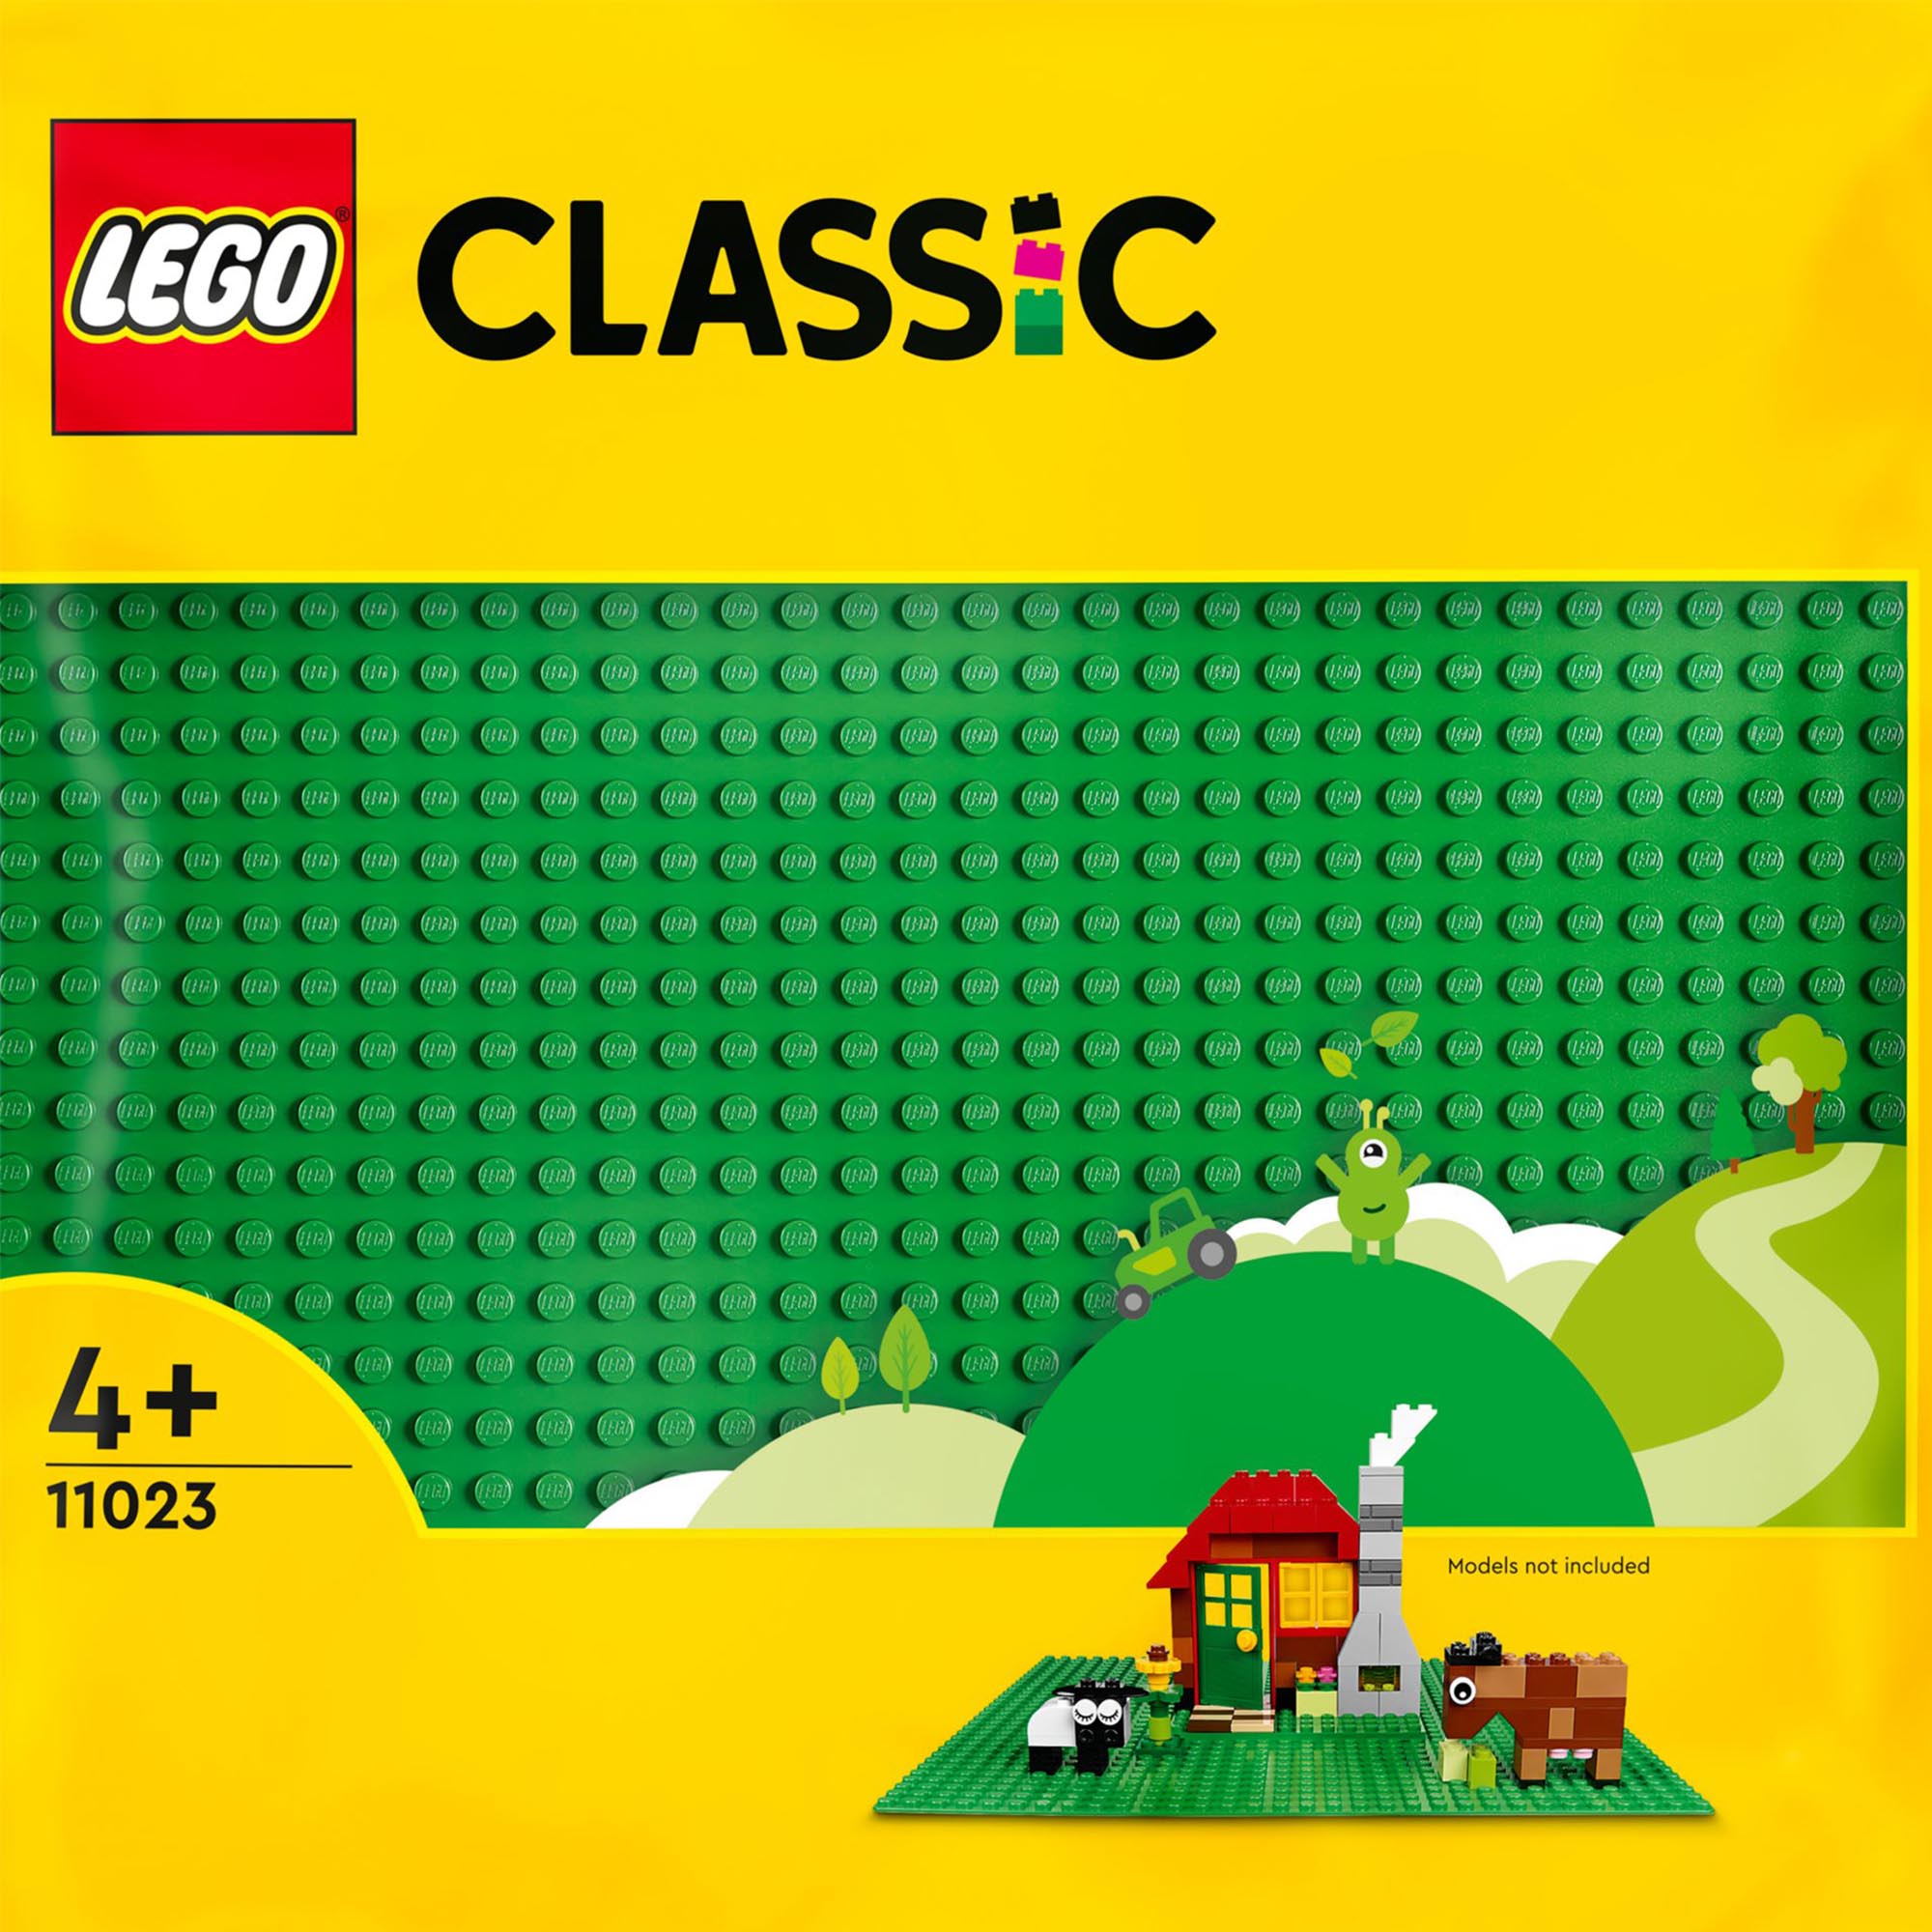 LEGO Classic Base Verde, Tavola per Costruzioni Quadrata con 32x32 Bottoncini, P 11023, , large